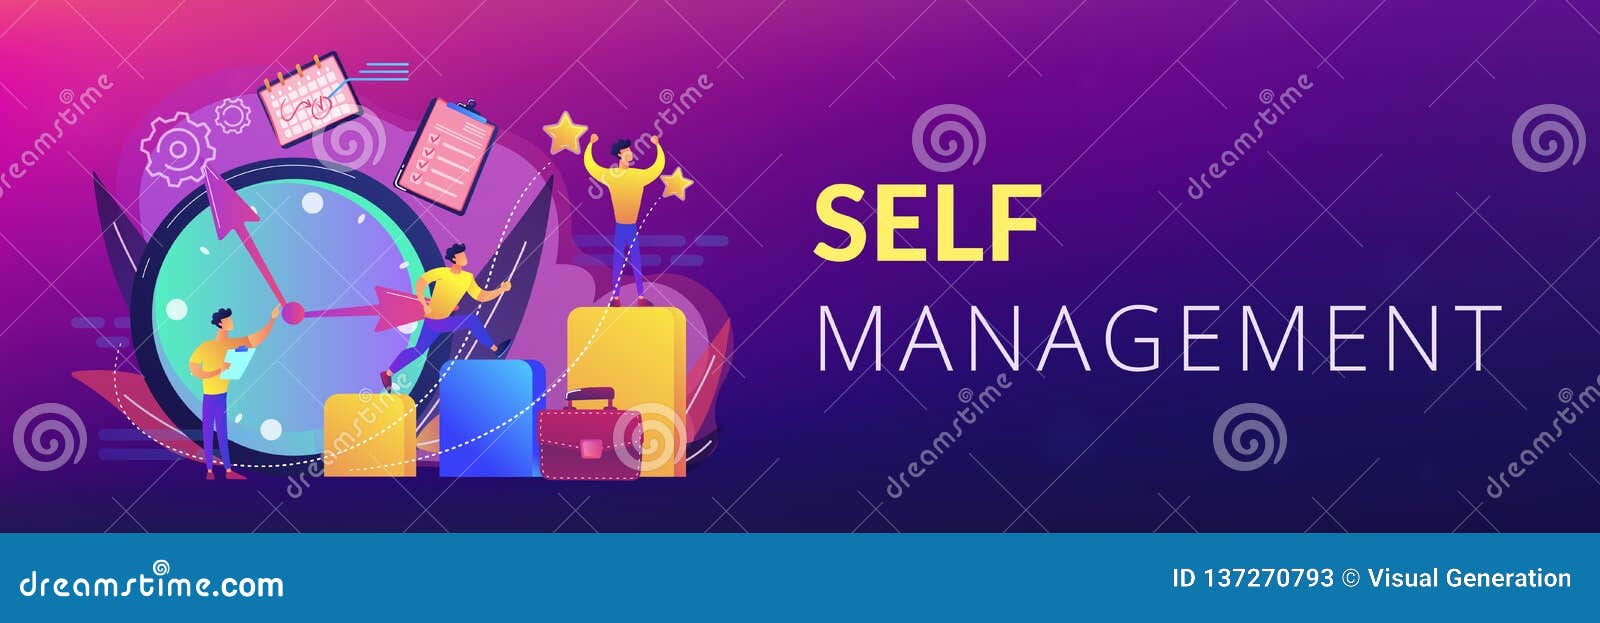 self management concept banner header.